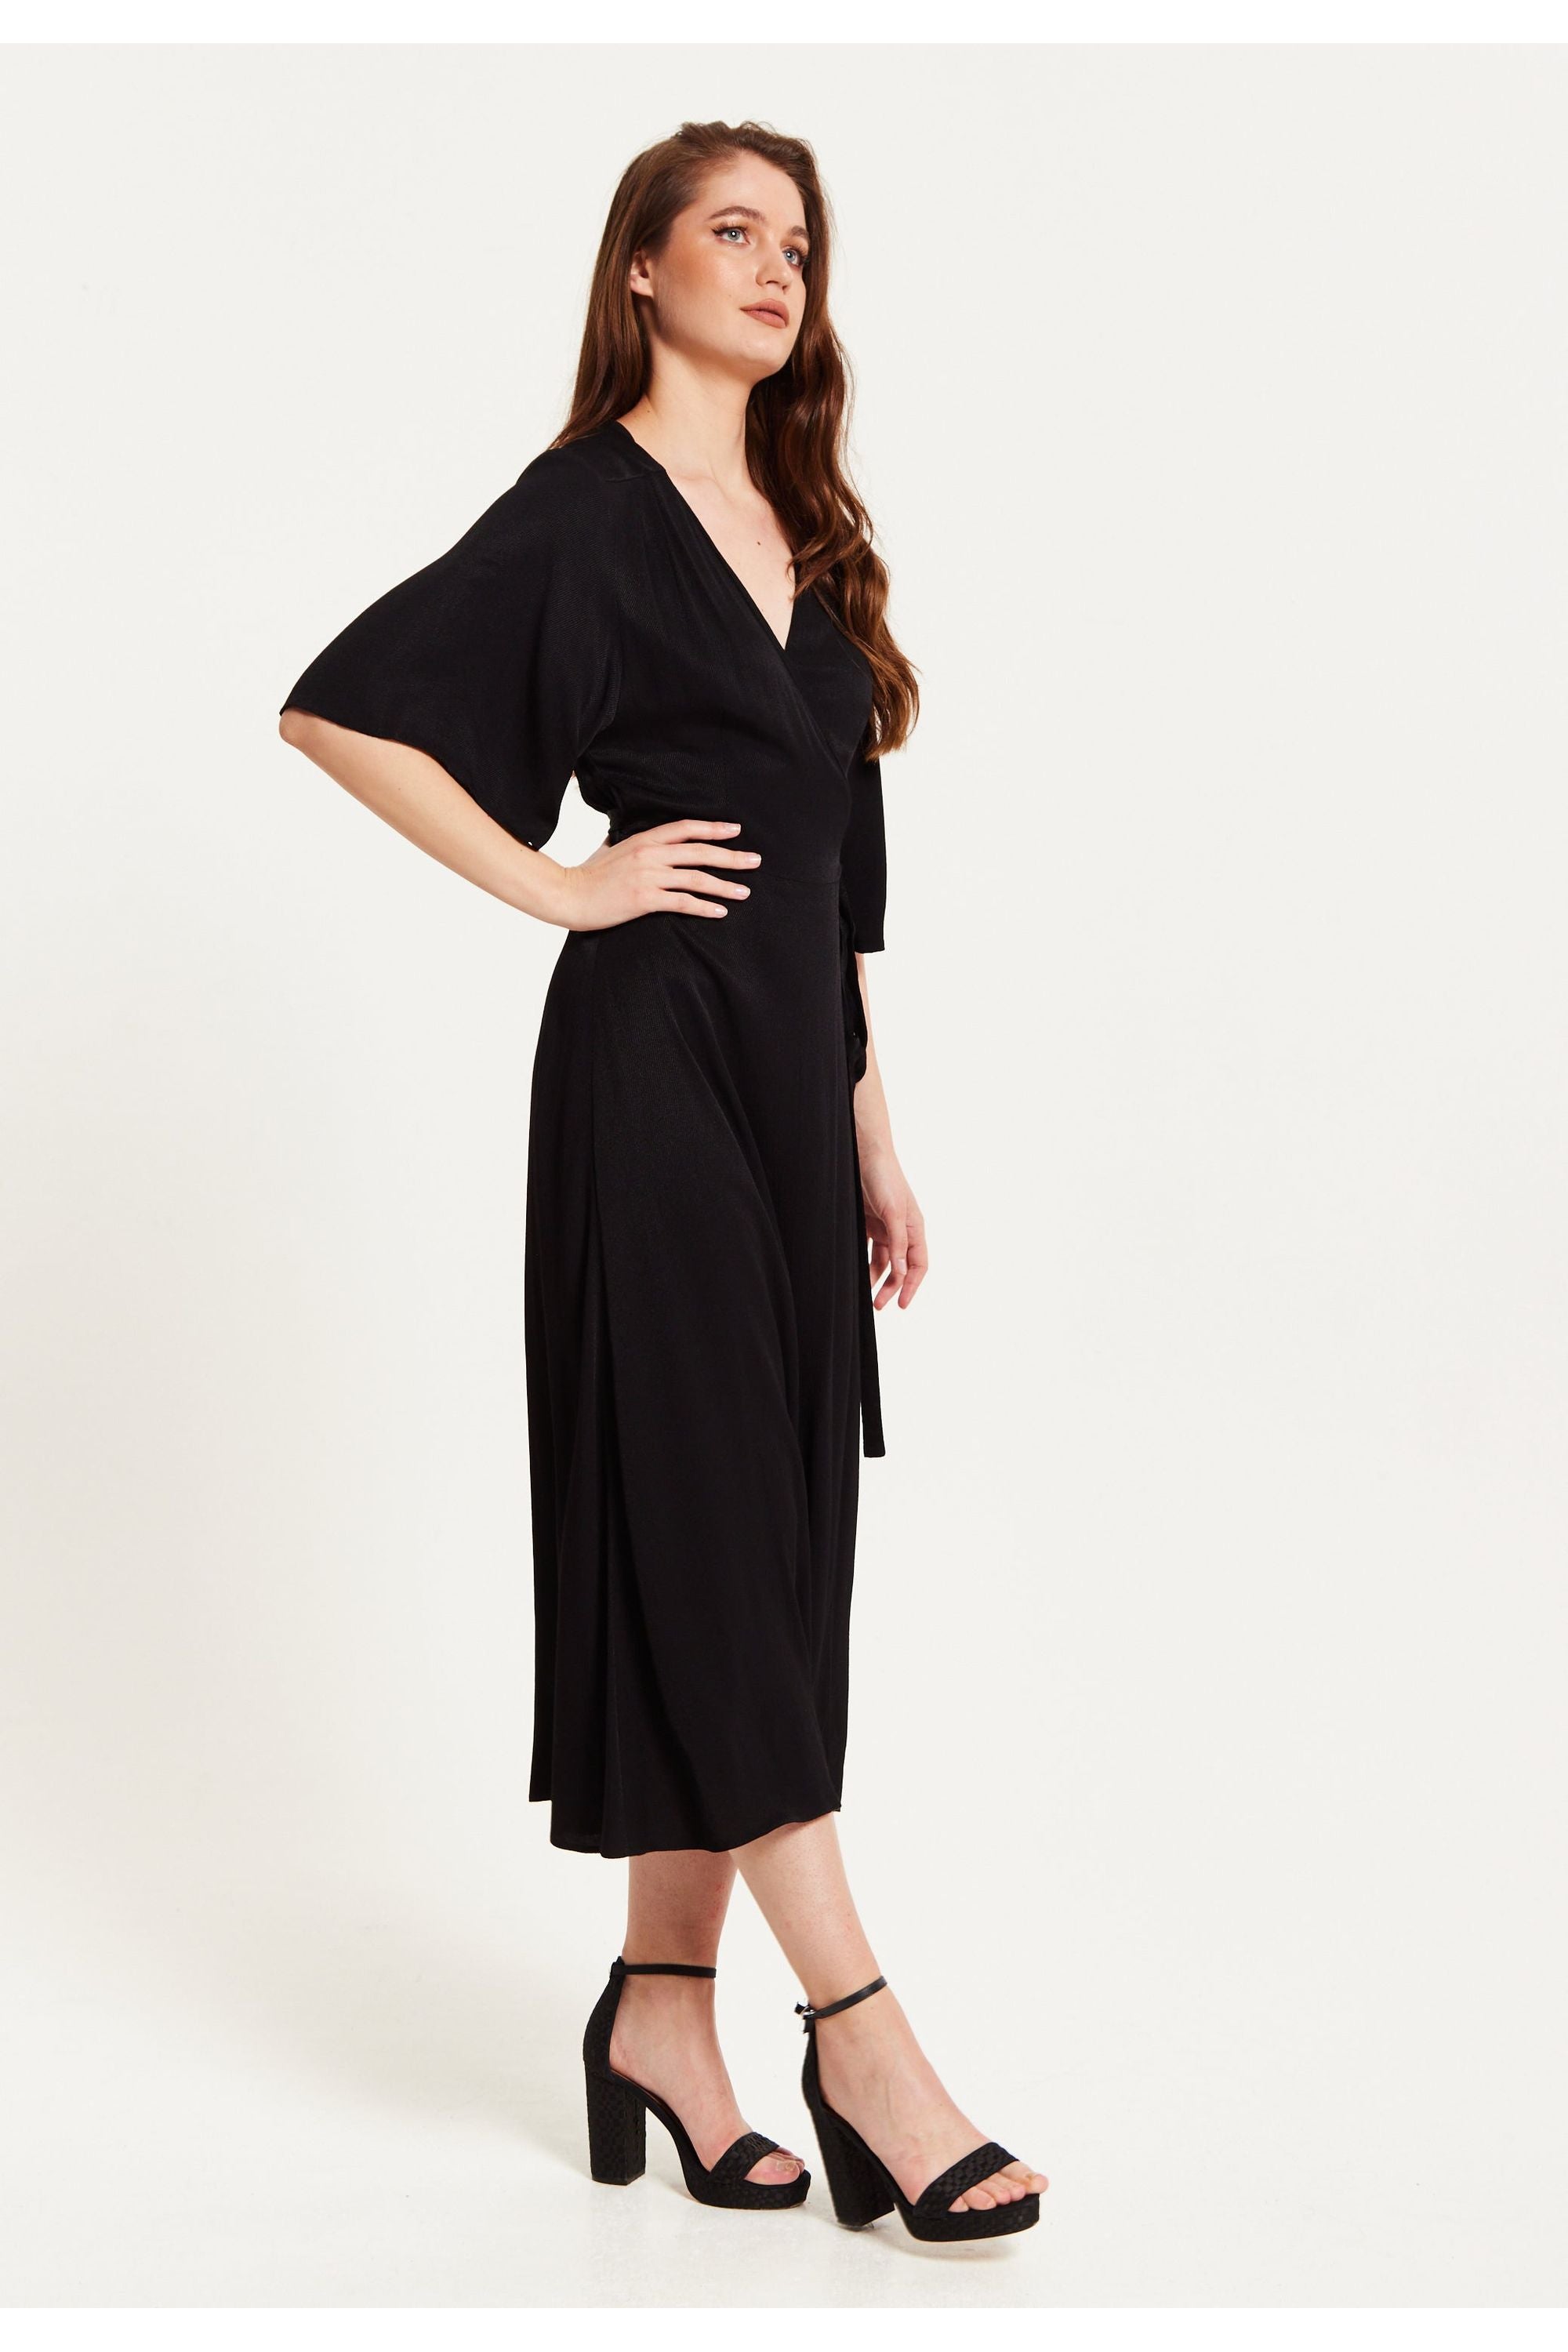 Black Maxi Wrap Dress With Kimono Sleeves C6-CCN001-Black